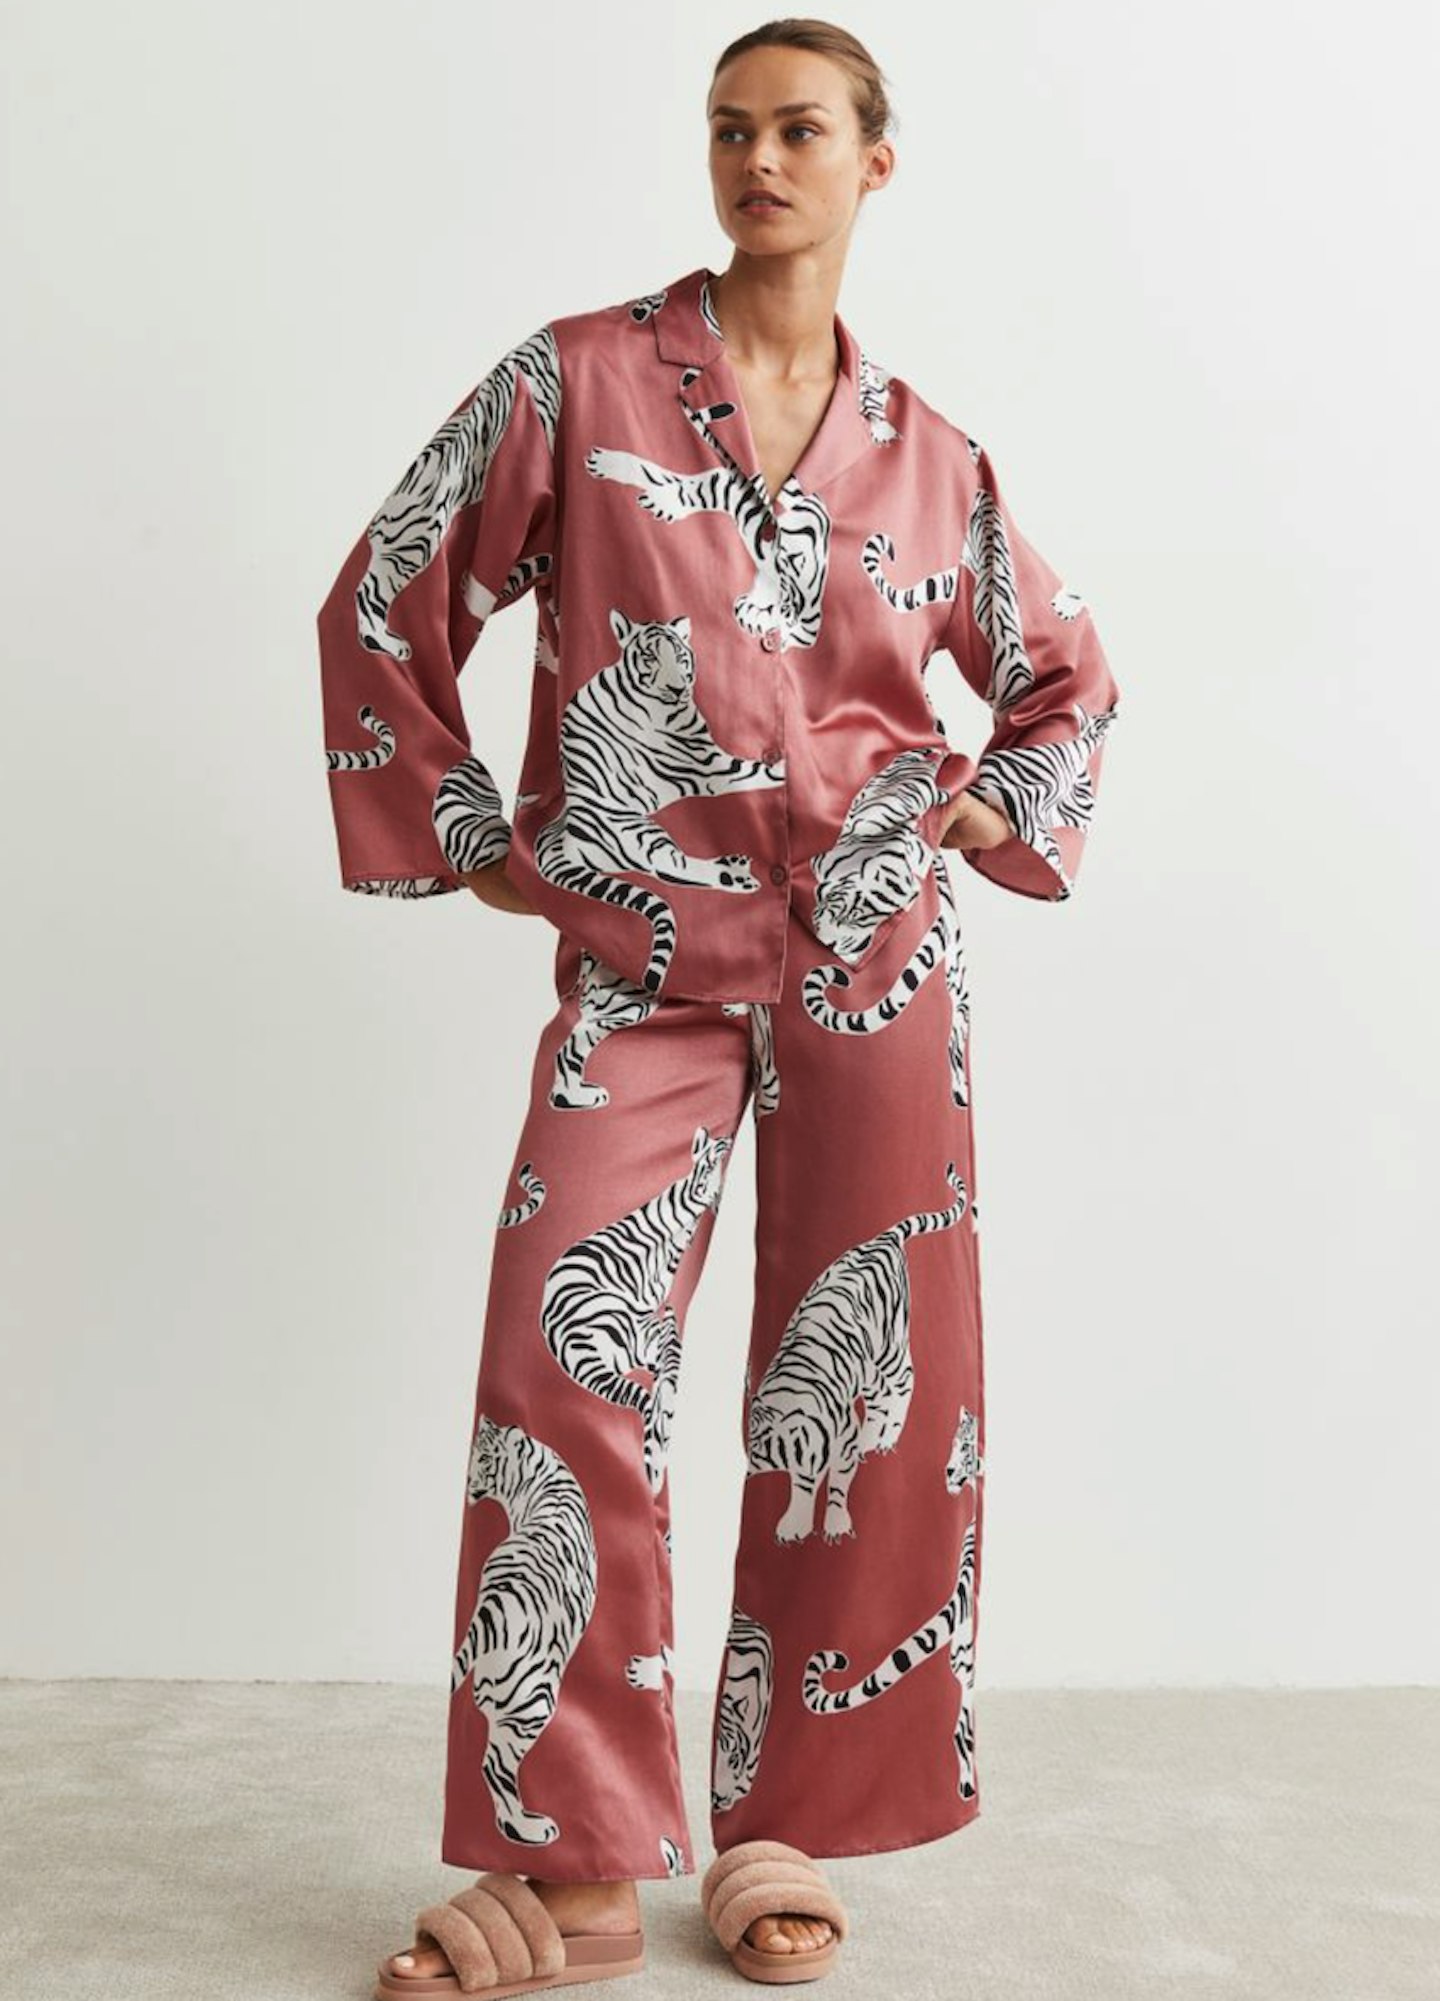 H&M Rose Tiger Print Pyjama Shirt And Bottoms